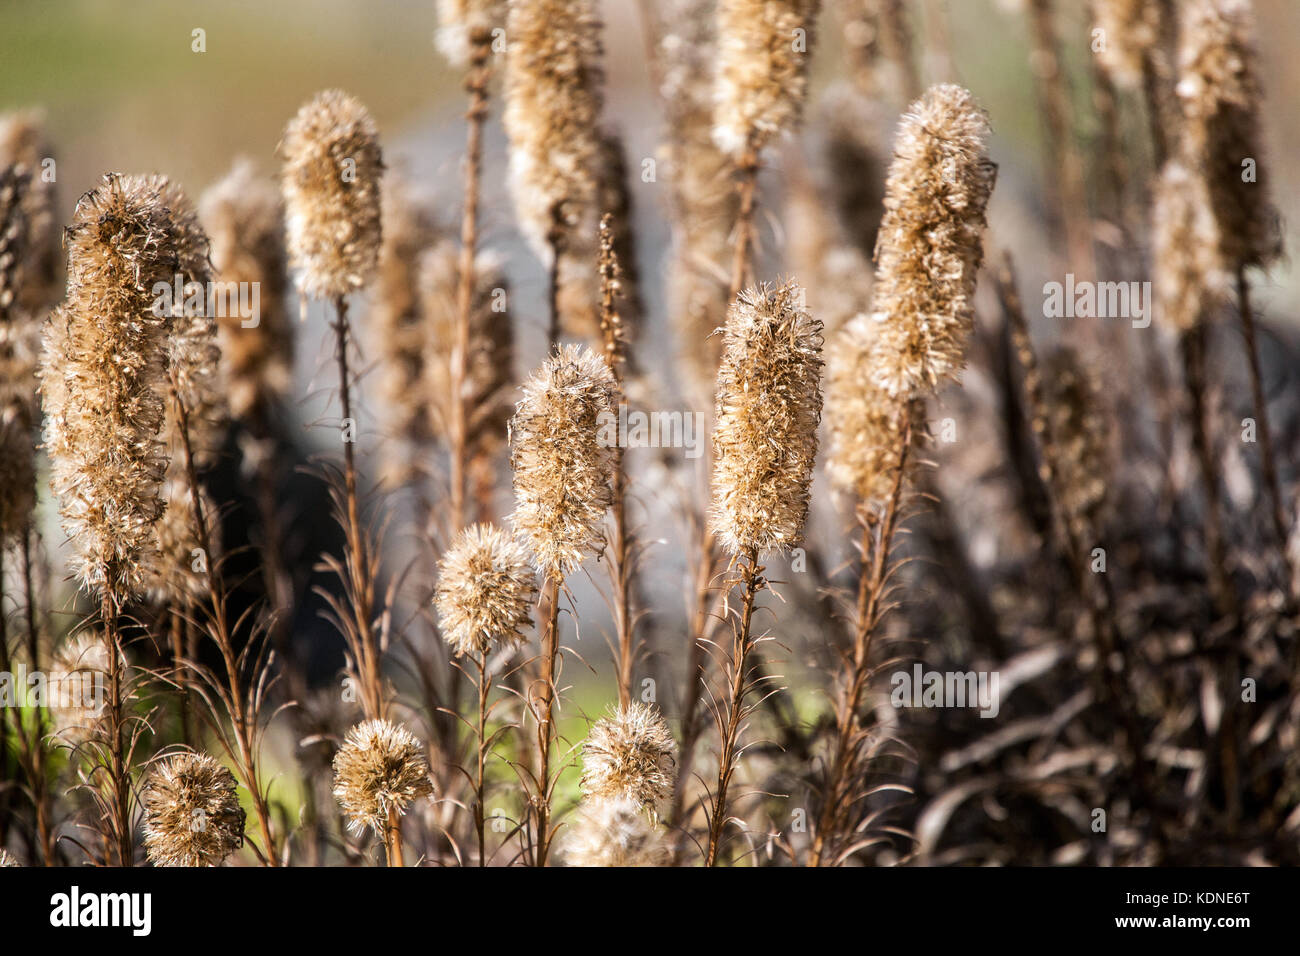 Liatris spicata, the dense blazing star or prairie gay feather, seedheads Stock Photo